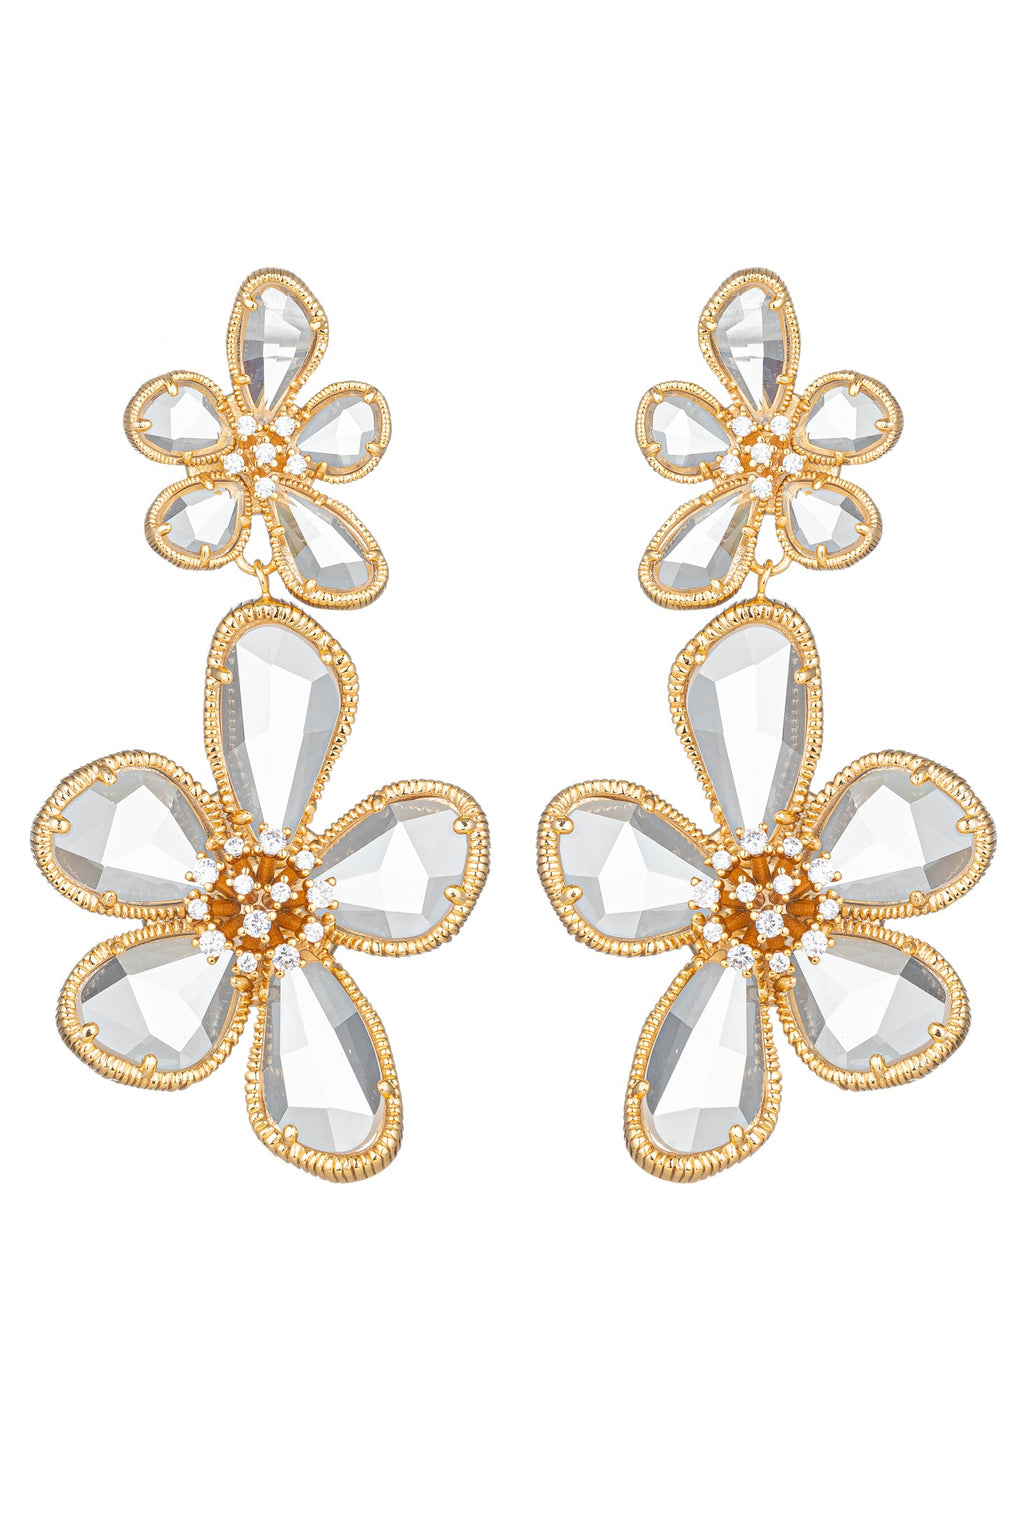 Kolab Double Flower 18K Gold Plated CZ Drop Earrings